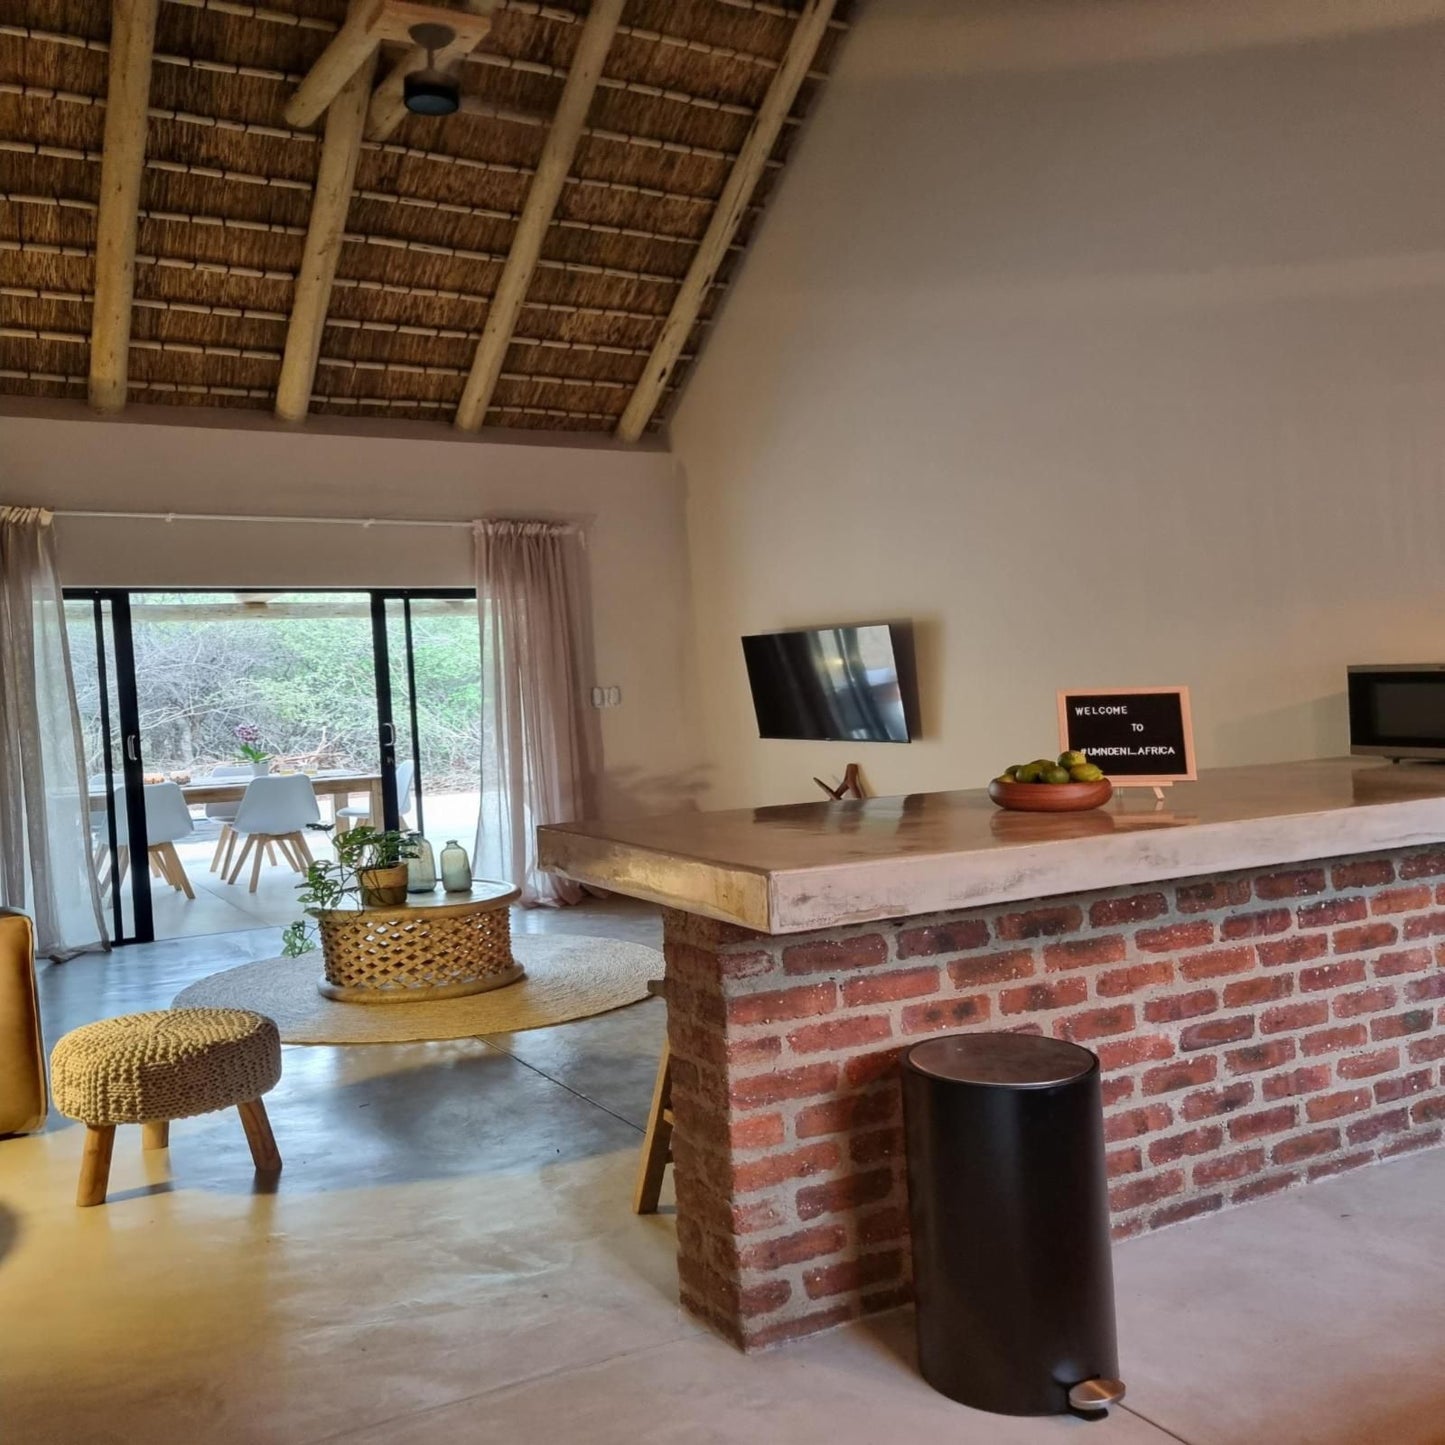 Umndeni Africa Hoedspruit Limpopo Province South Africa Living Room